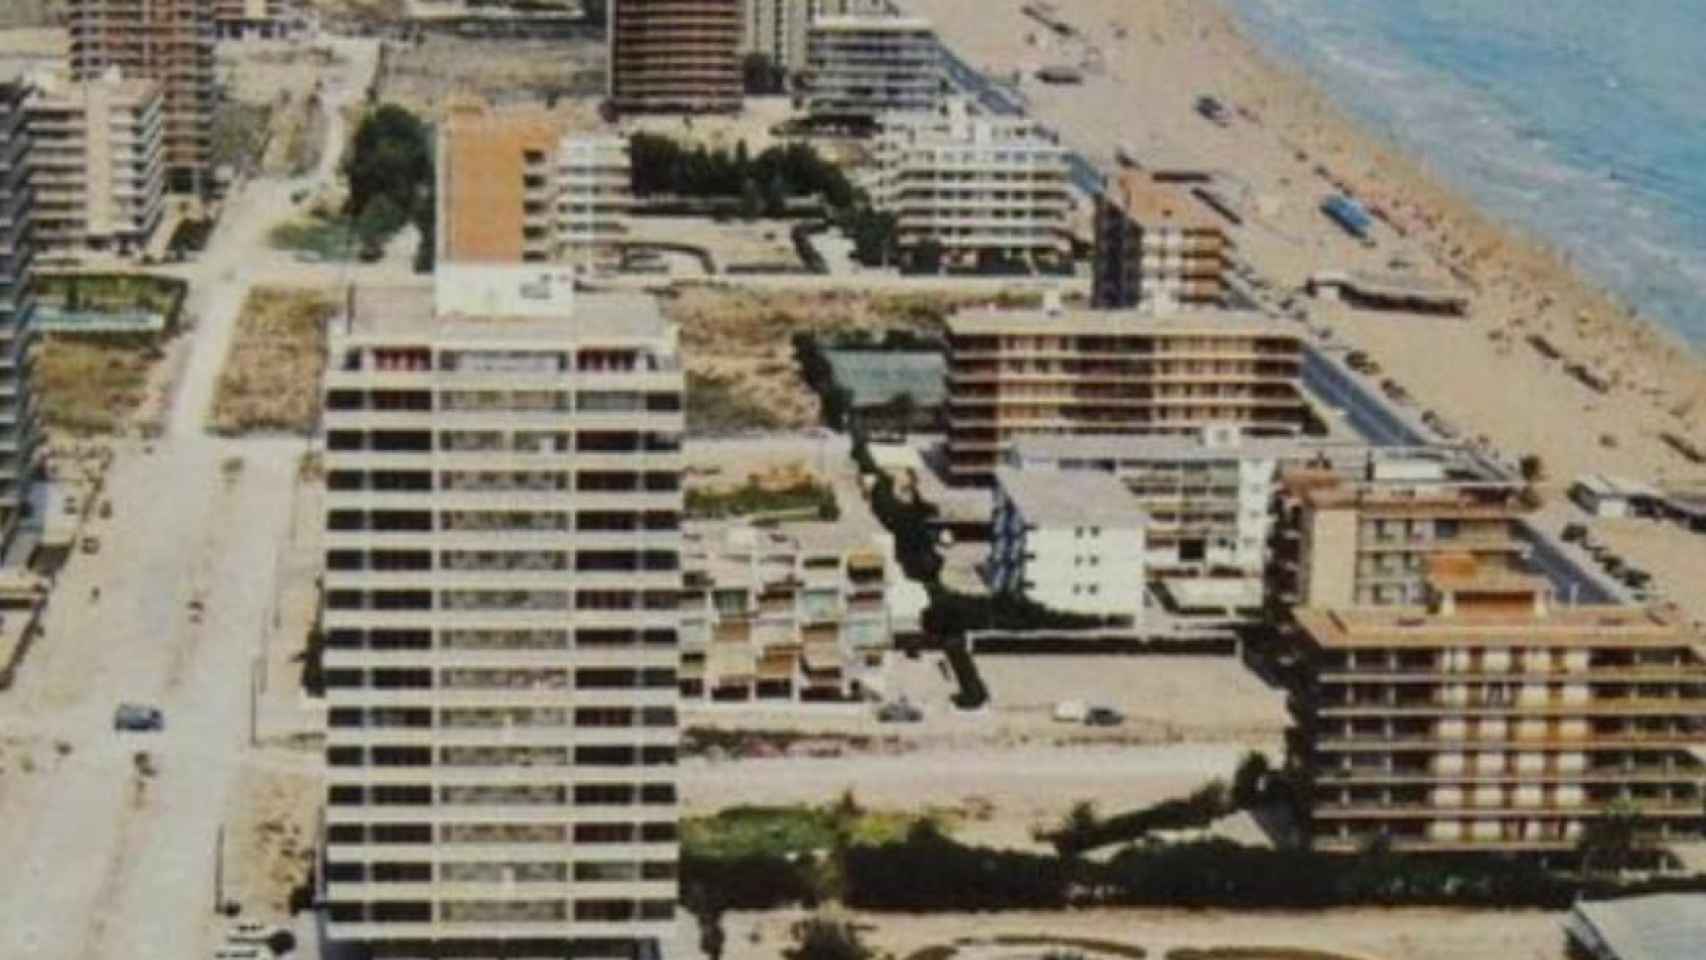 La zona de San Juan en Alicante no se había desarrollado completamente.